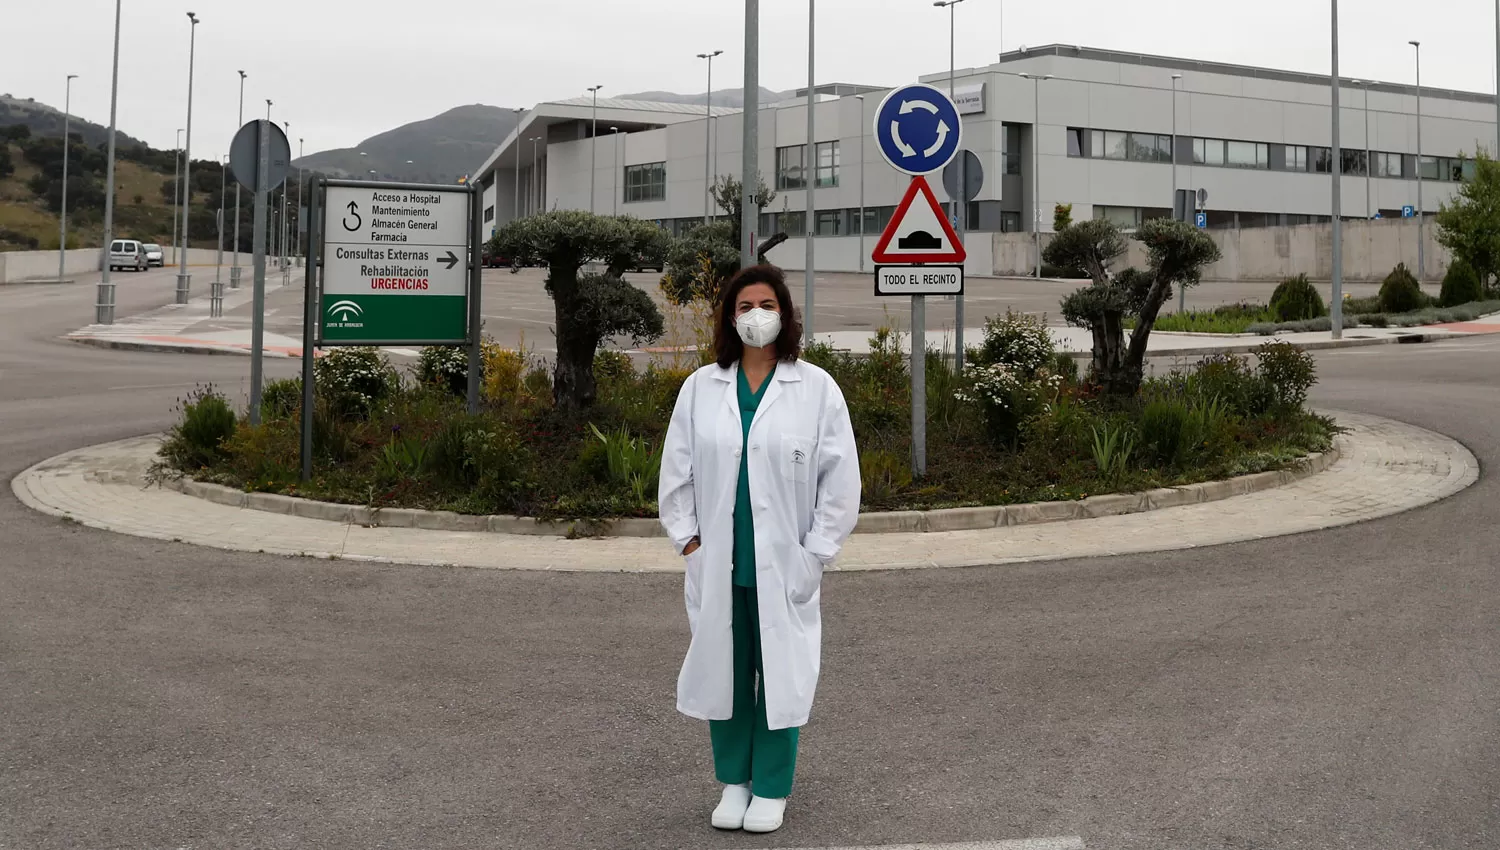 MEJORÍA. Una enfermera posa para un retrato en las afueras del hospital en el que trabaja, en Rinda, al sureste de España.